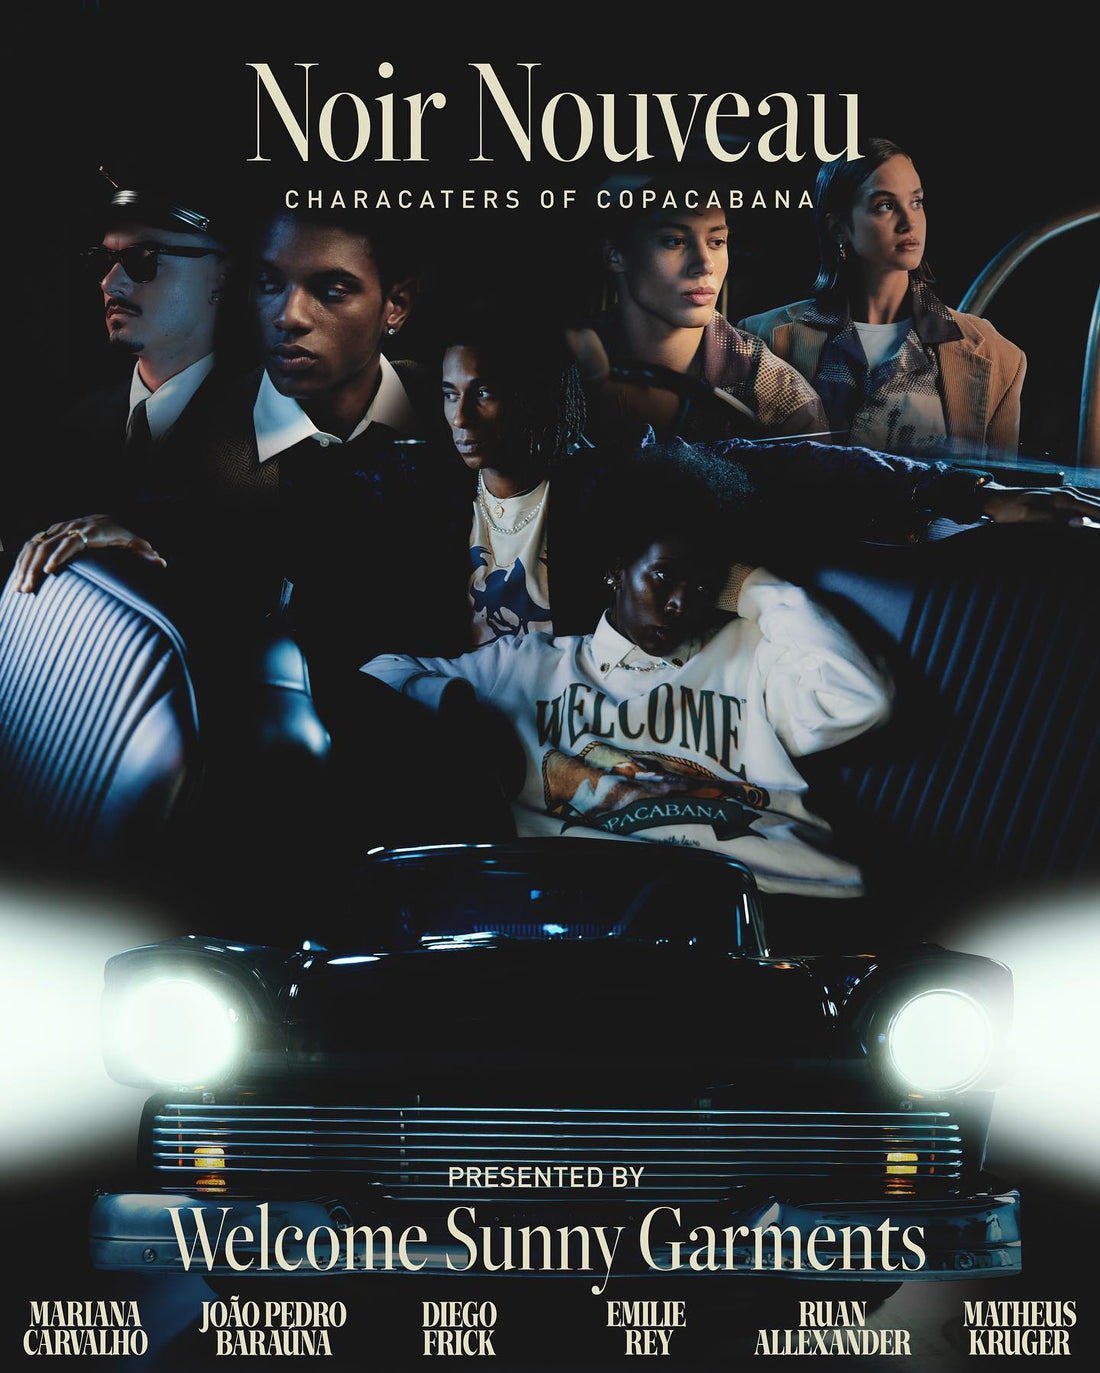 Welcome Sunny Garments e sua nova coleção Noir de Noveau